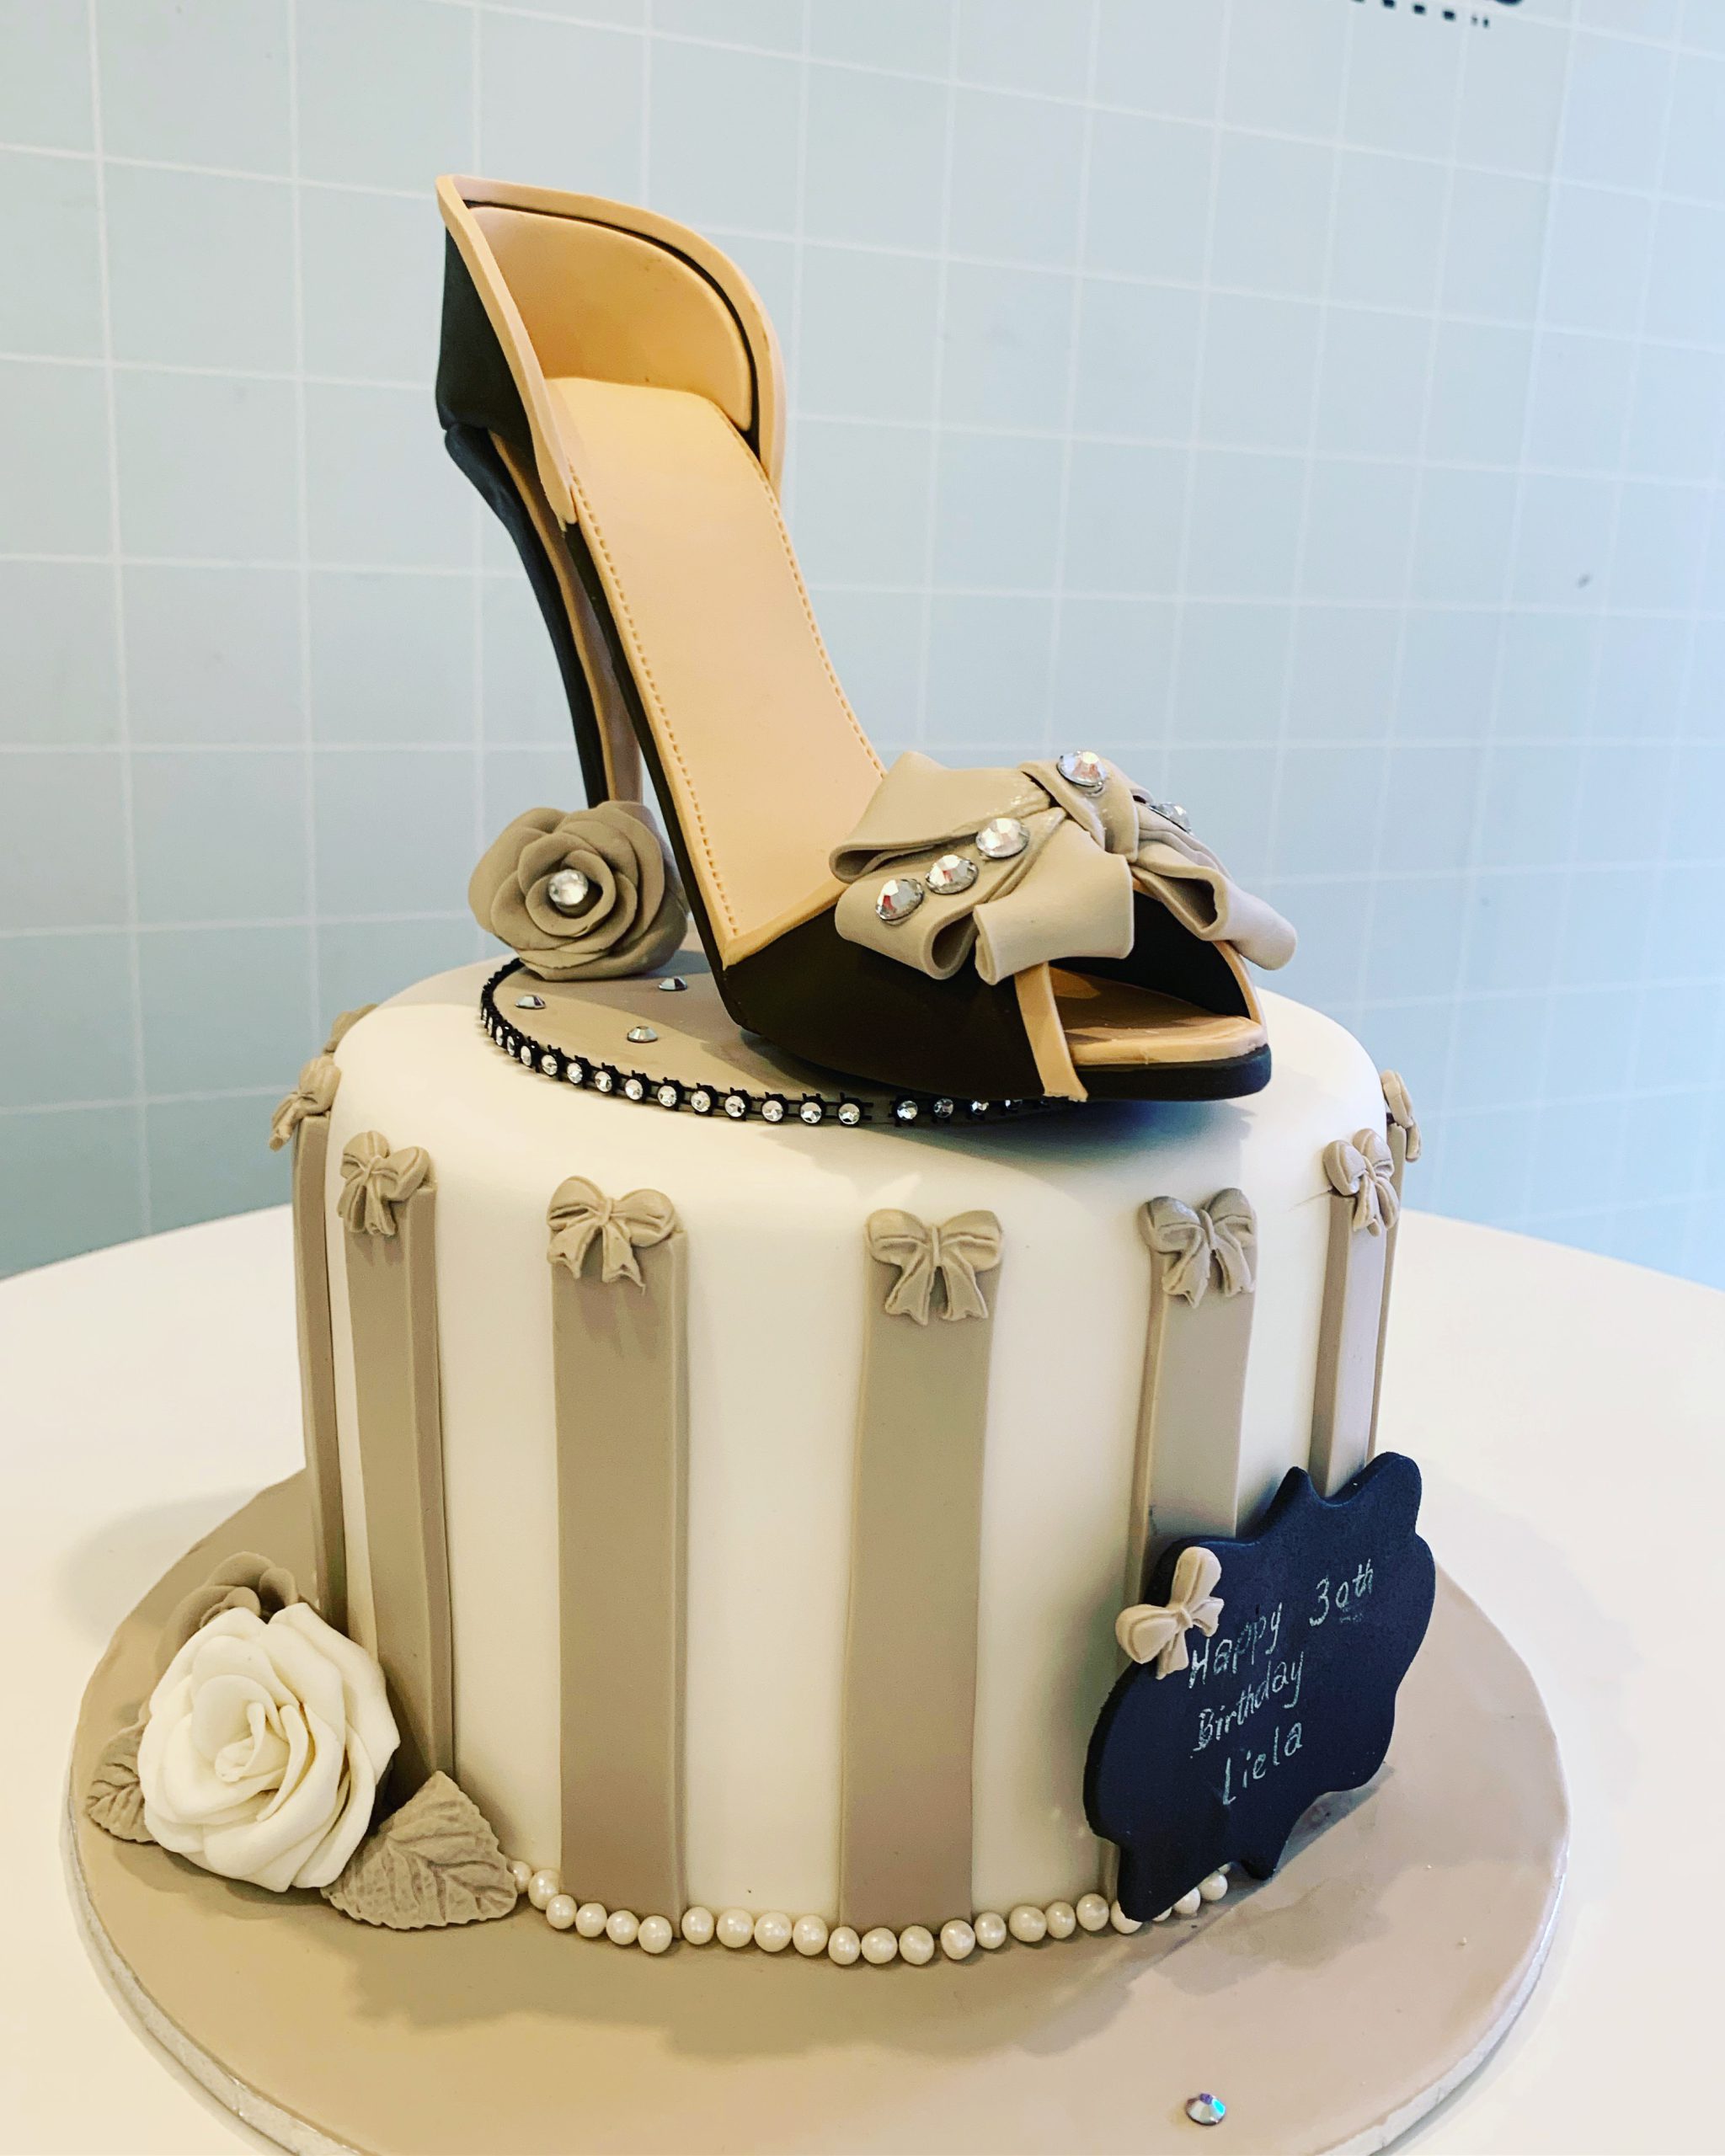 Cake search: luxurycake - CakesDecor